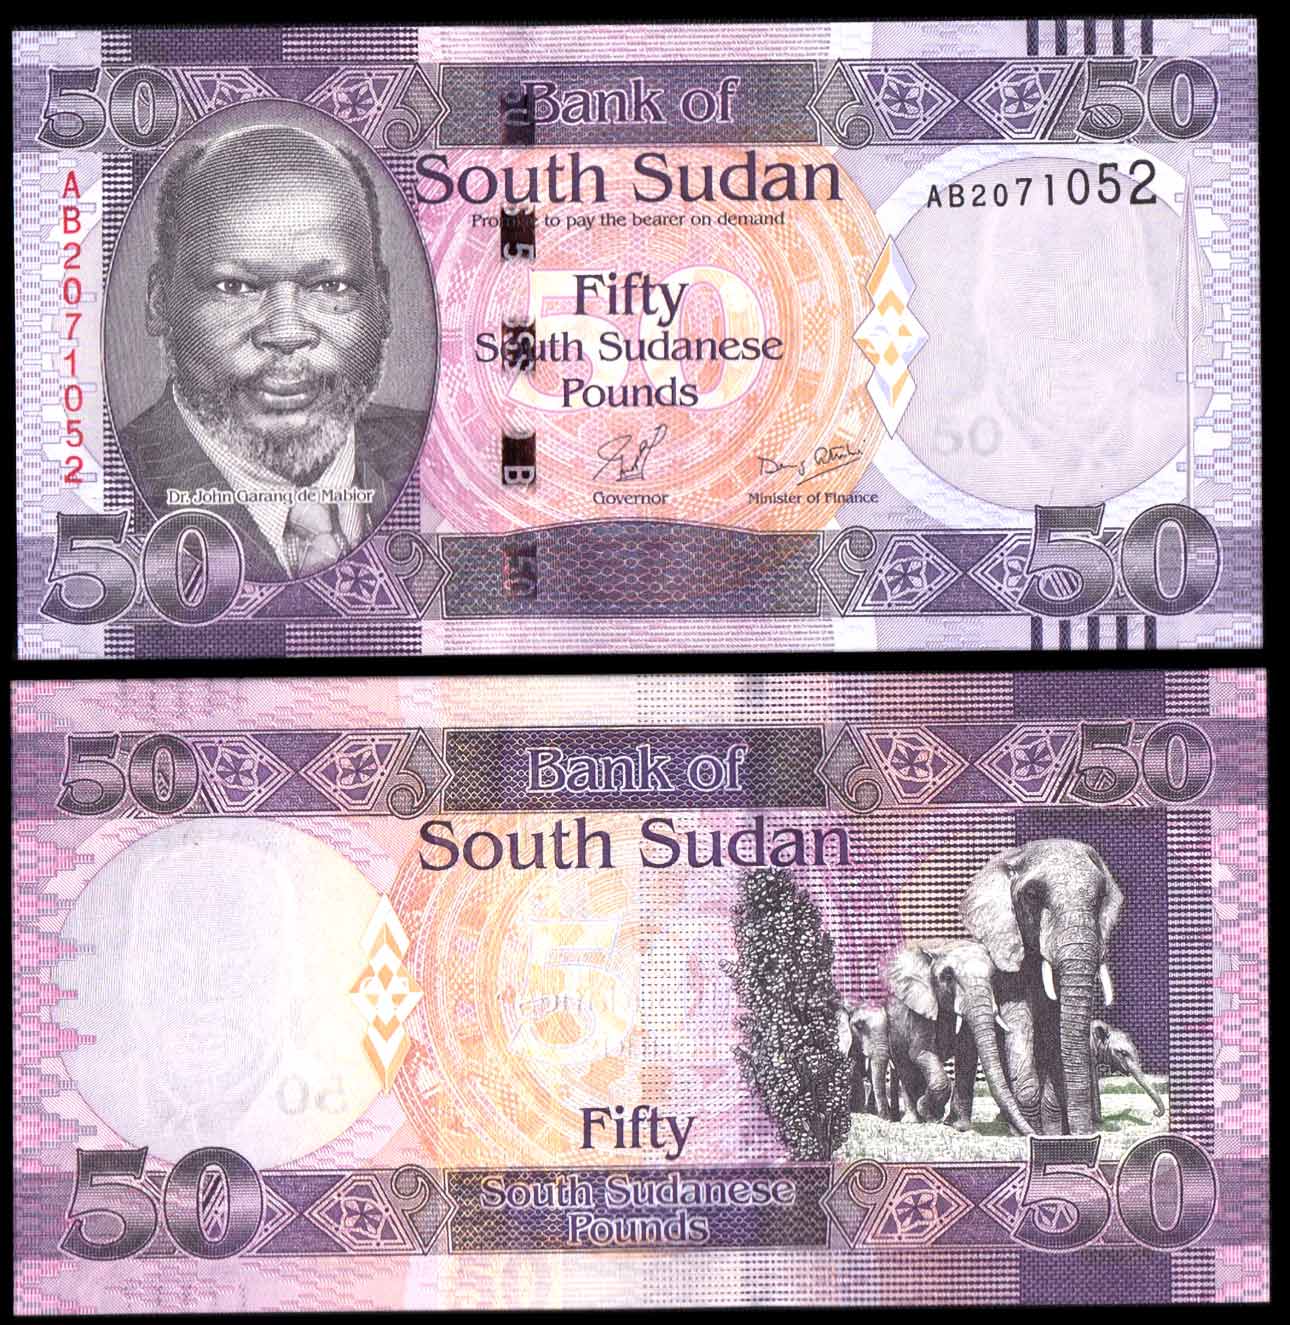 SOUTH SUDAN 50 Pounds 2011 Fior di Stampa